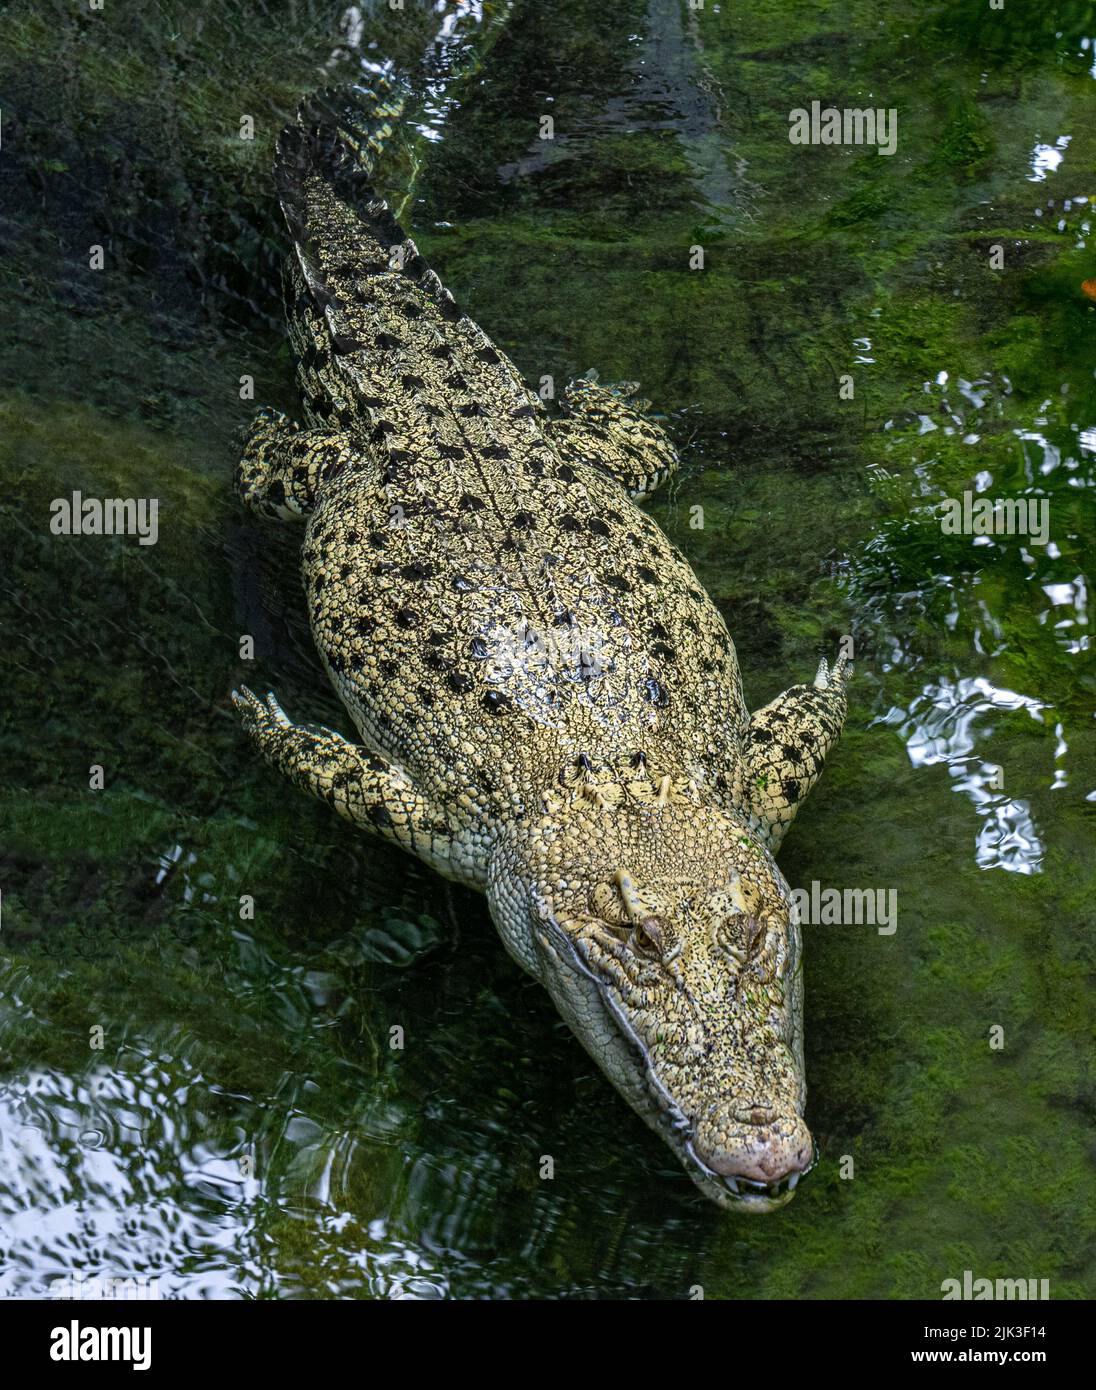 Rare white albino crocodile Stock Photo - Alamy